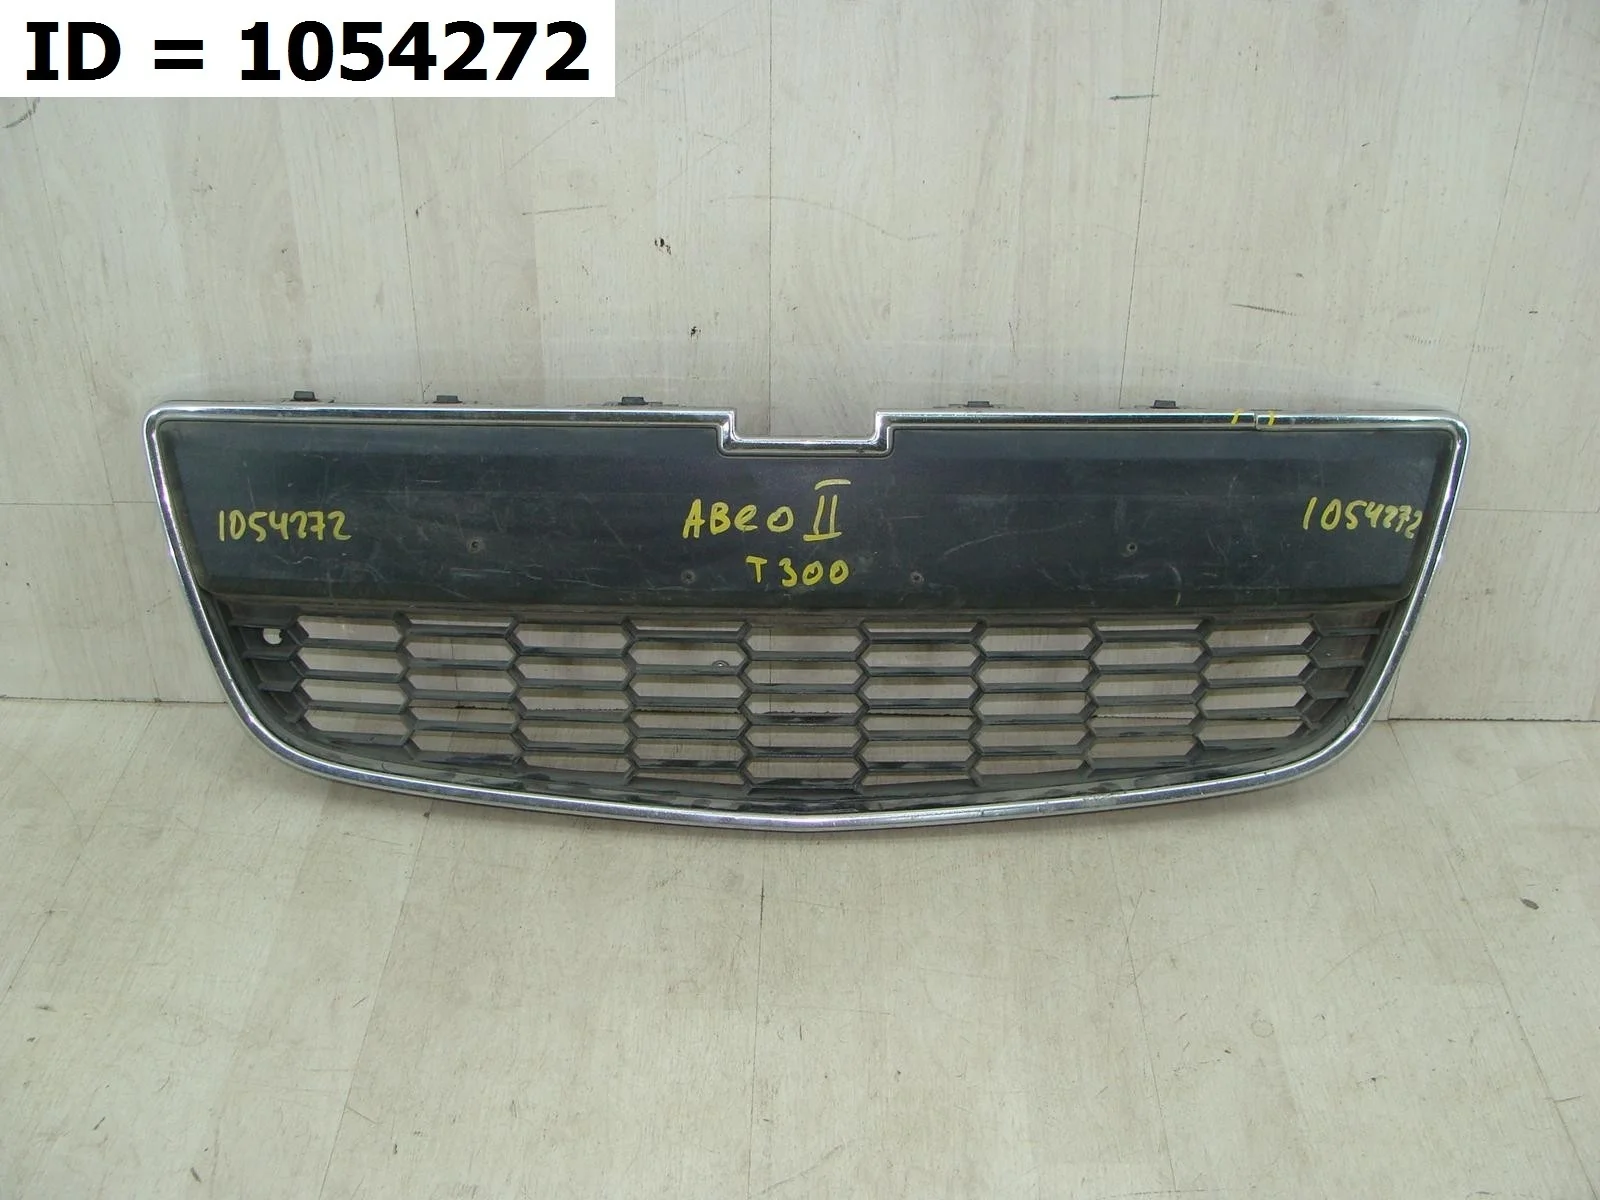 решетка радиатора Chevrolet AVEO 2, T300  95415507 2011 - 2015 (контрактная запчасть)